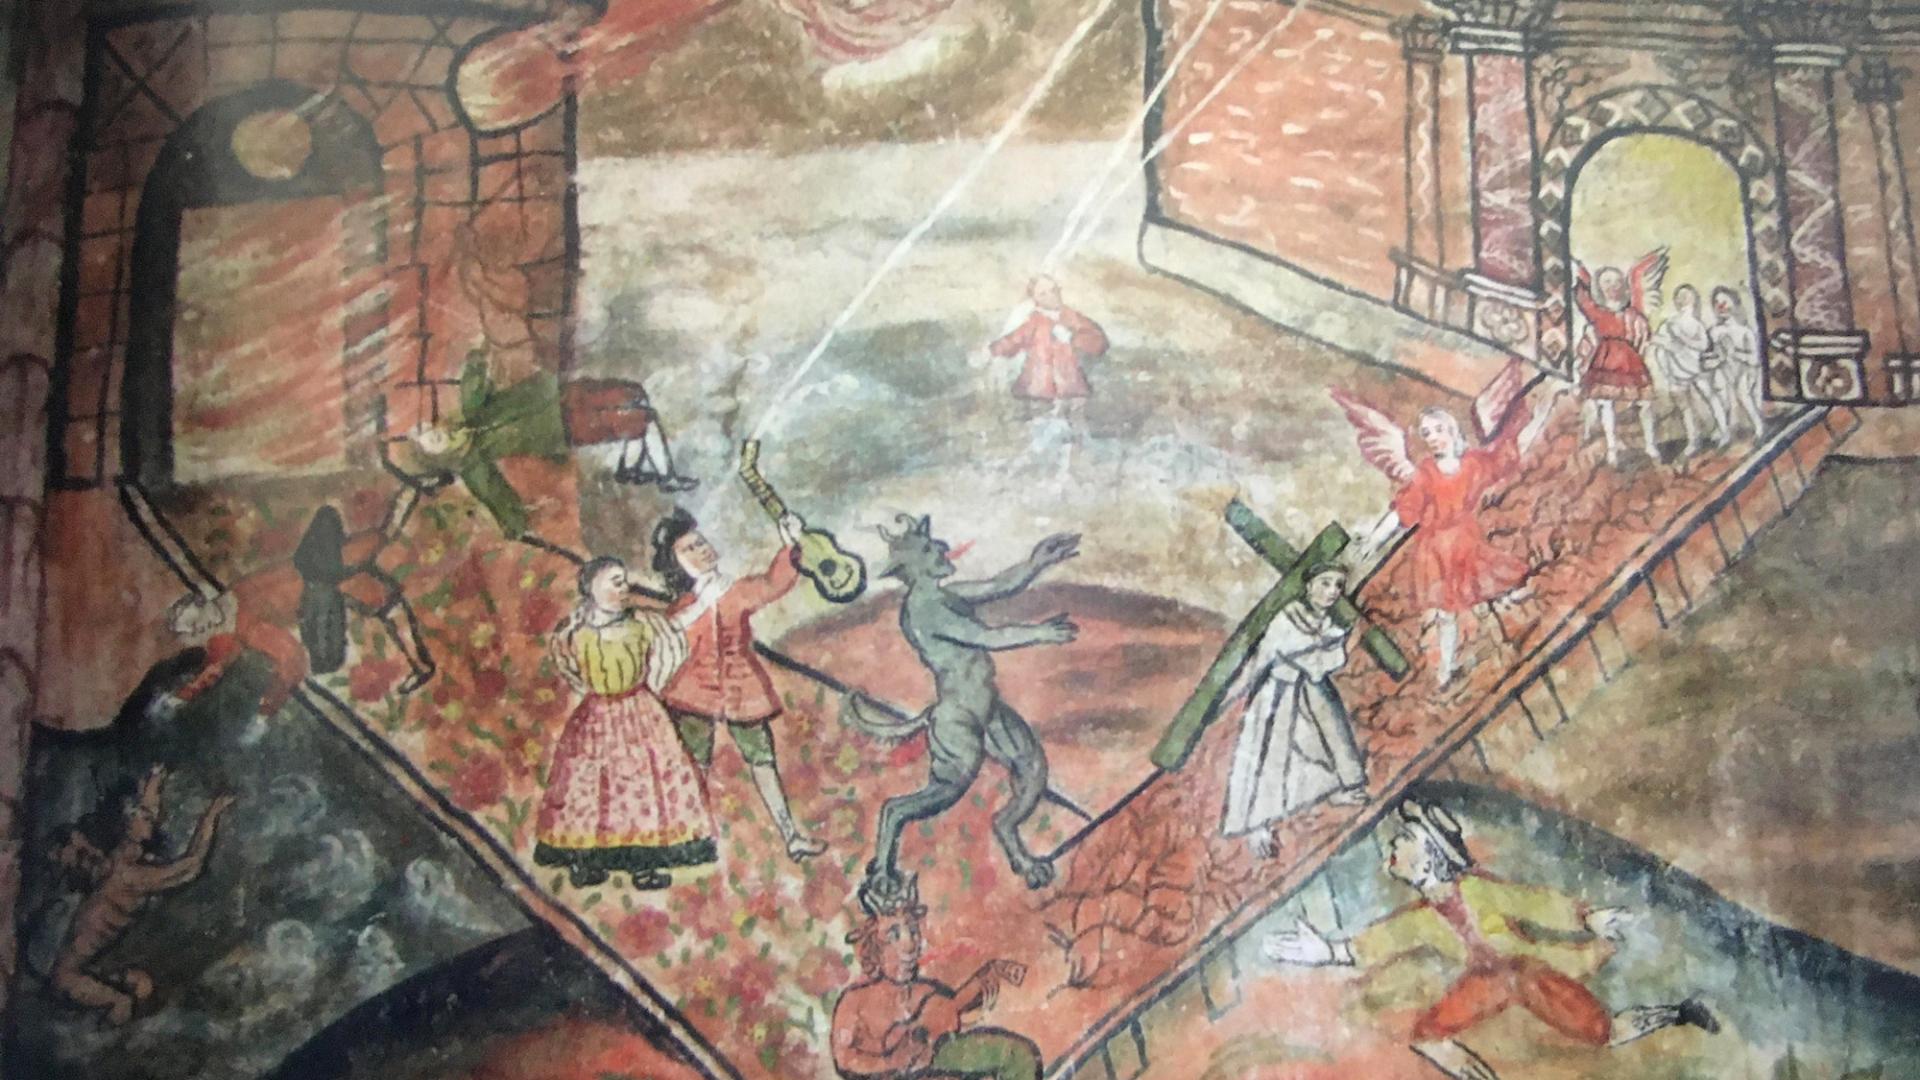 El camino al cielo y el infierno. Mural en el convento de la Merced, Cuzco, siglo XVIII (Cohen 2016).